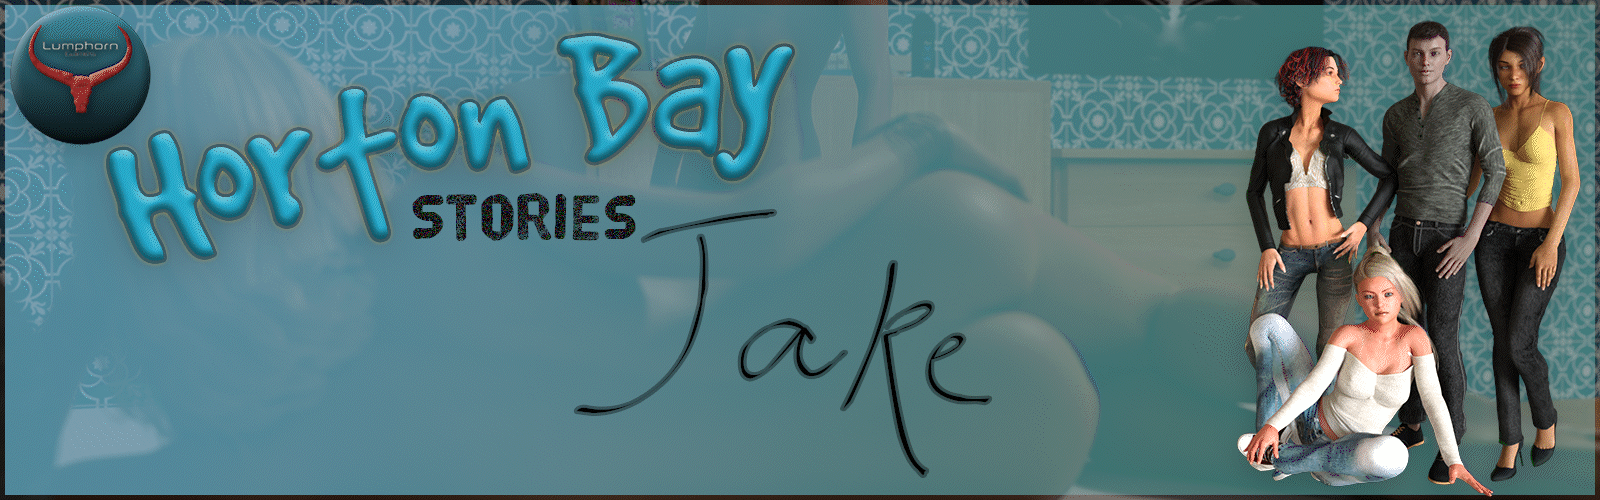 Horton Bay Stories - Jake poster